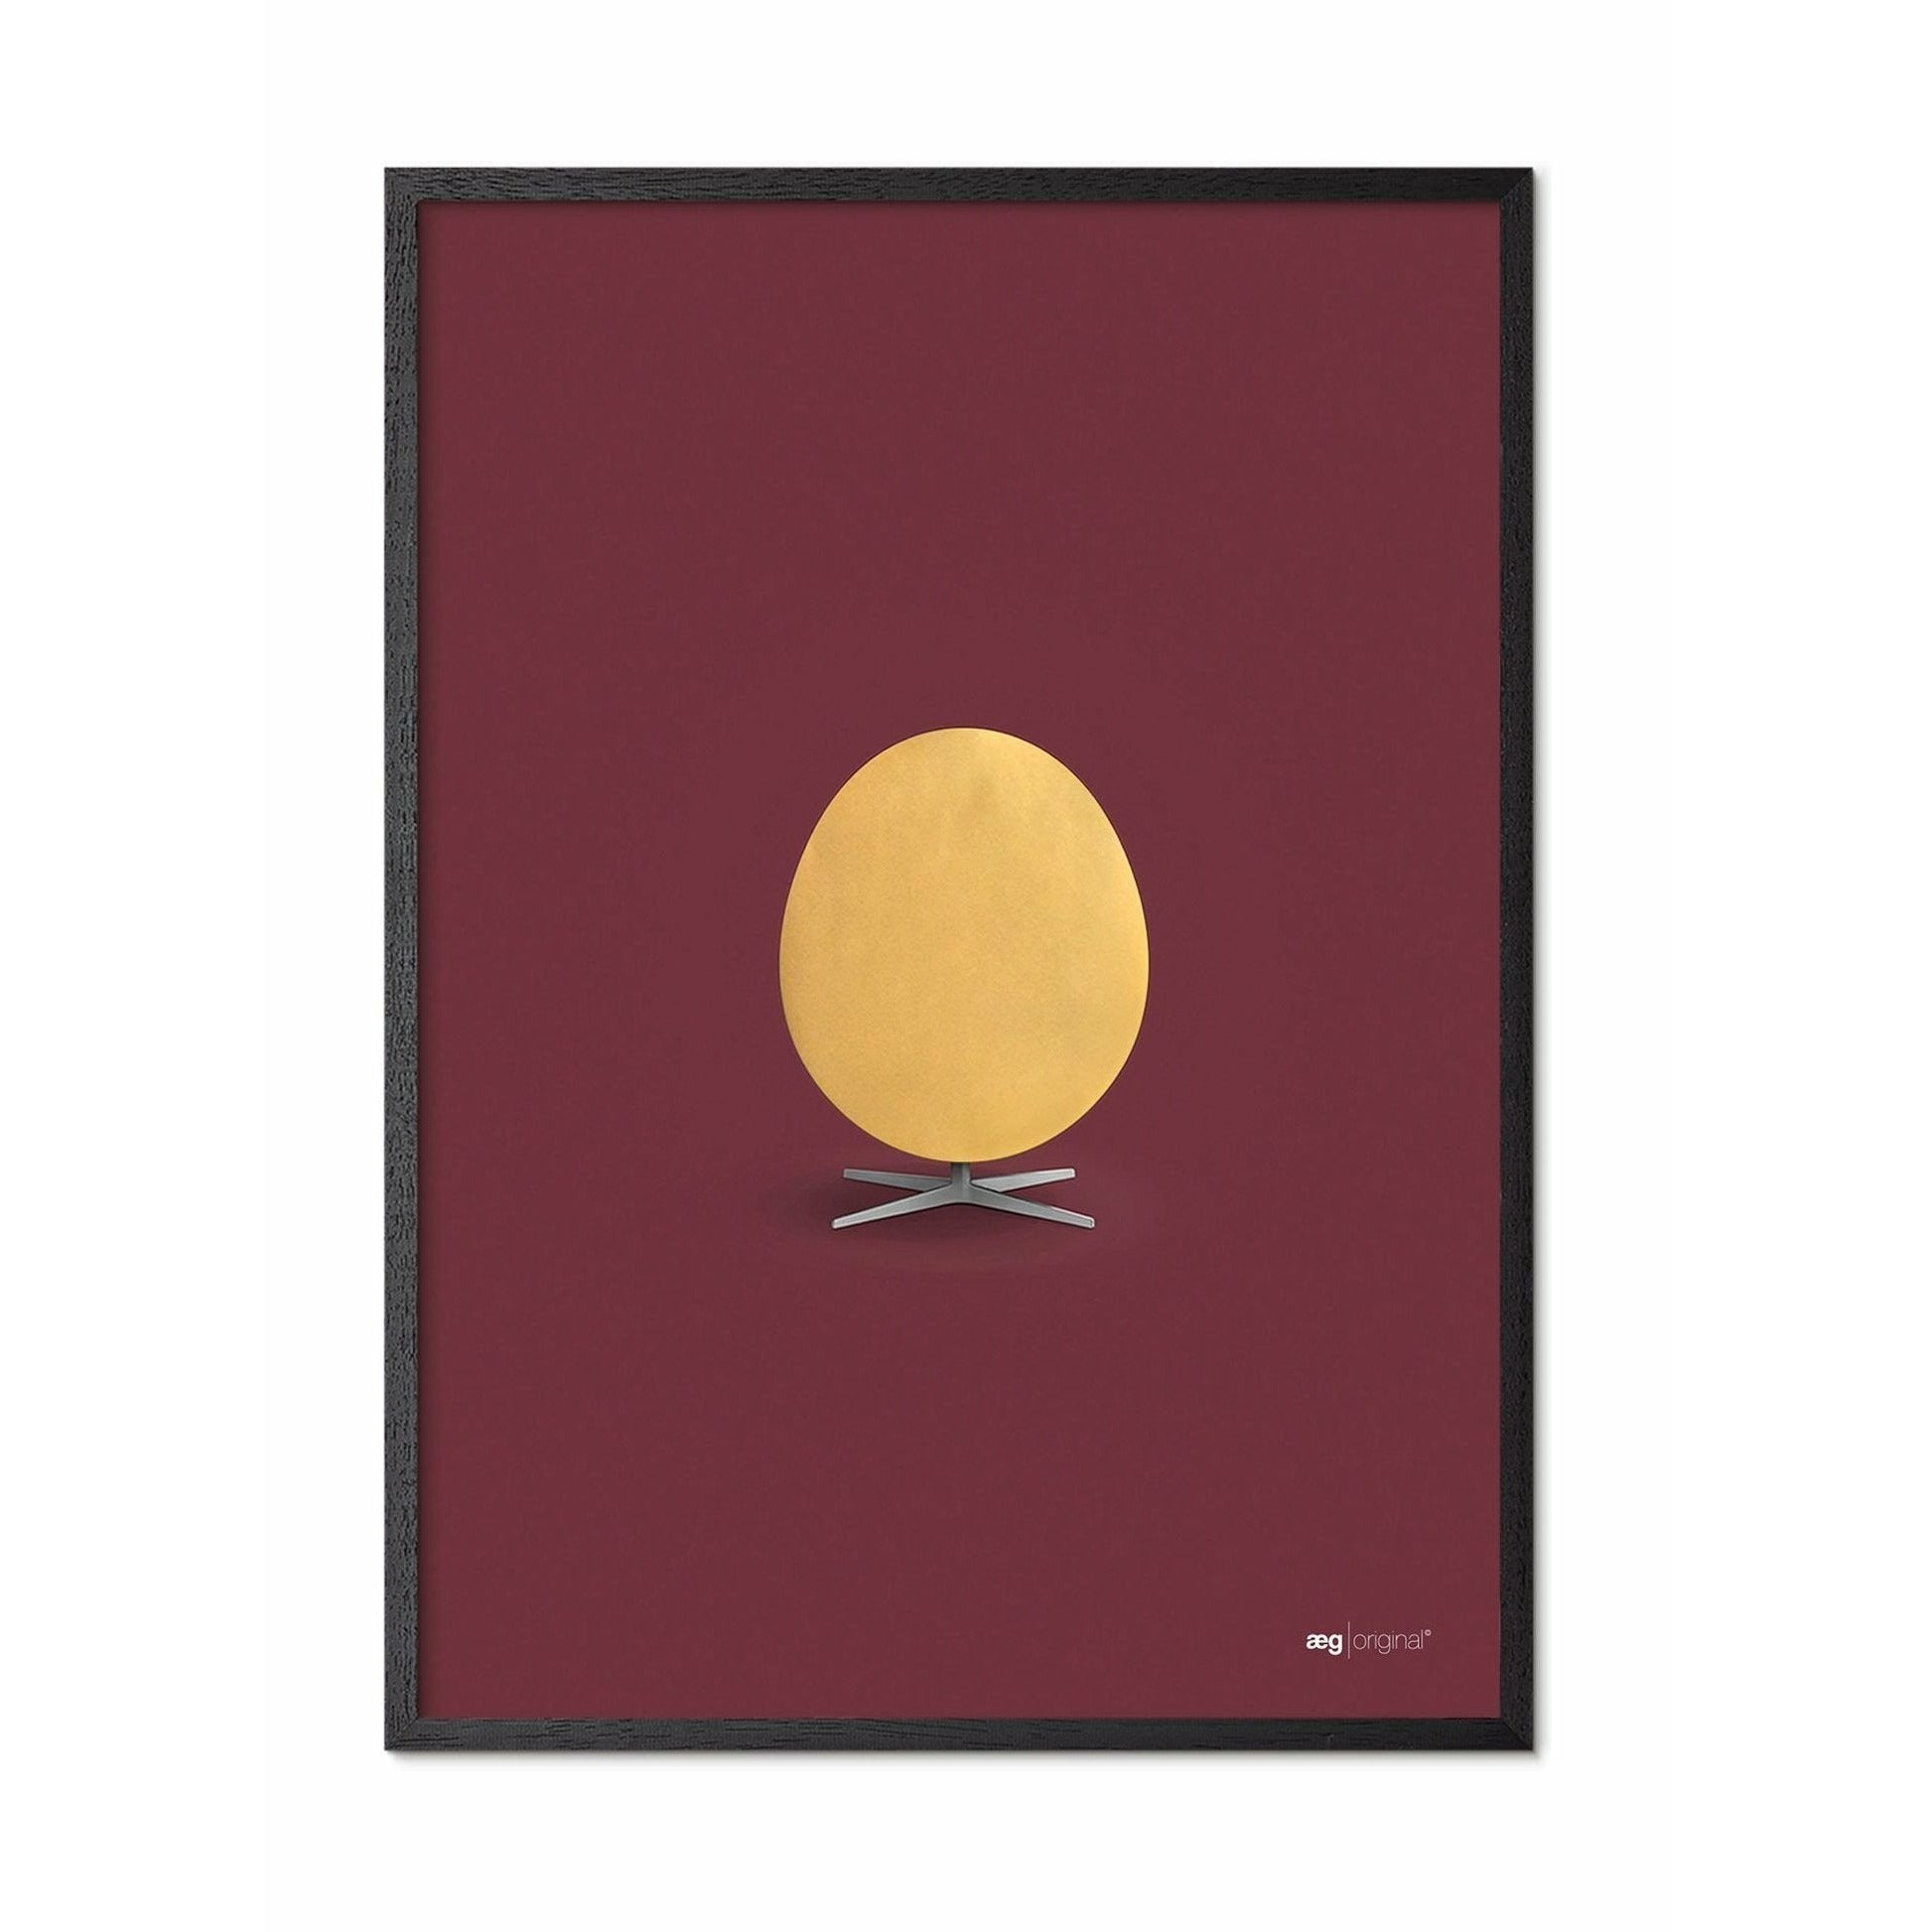 Brainchild Egg Poster, Frame in Black Lacquered Wood A5, Gold/Bordeaux Bakgrunn